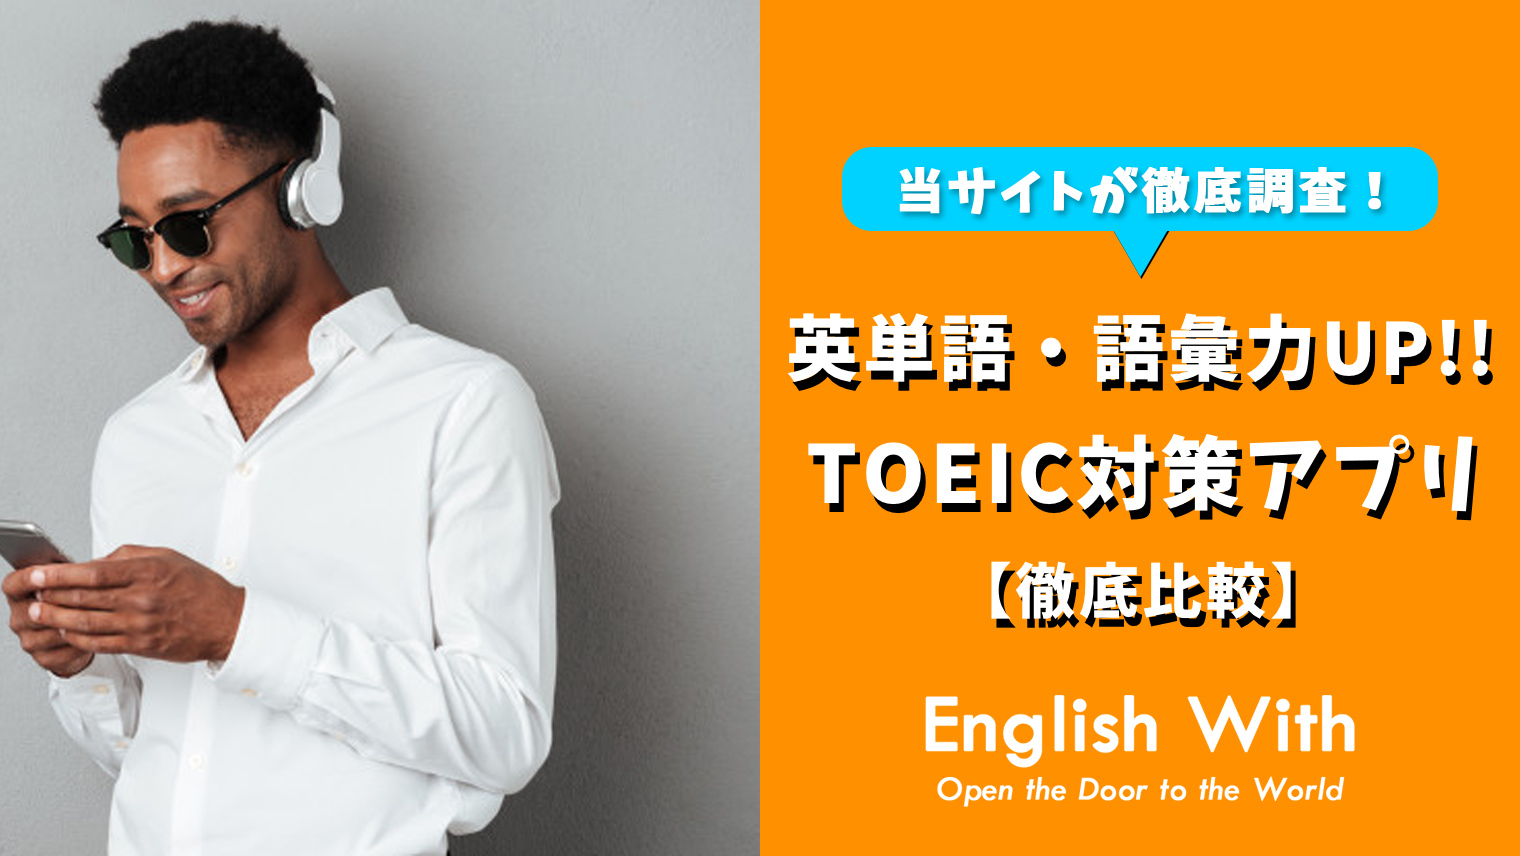 Toeic英単語がたくさん学べる おすすめ英語学習アプリを紹介 おすすめ英会話 英語学習の比較 ランキング English With